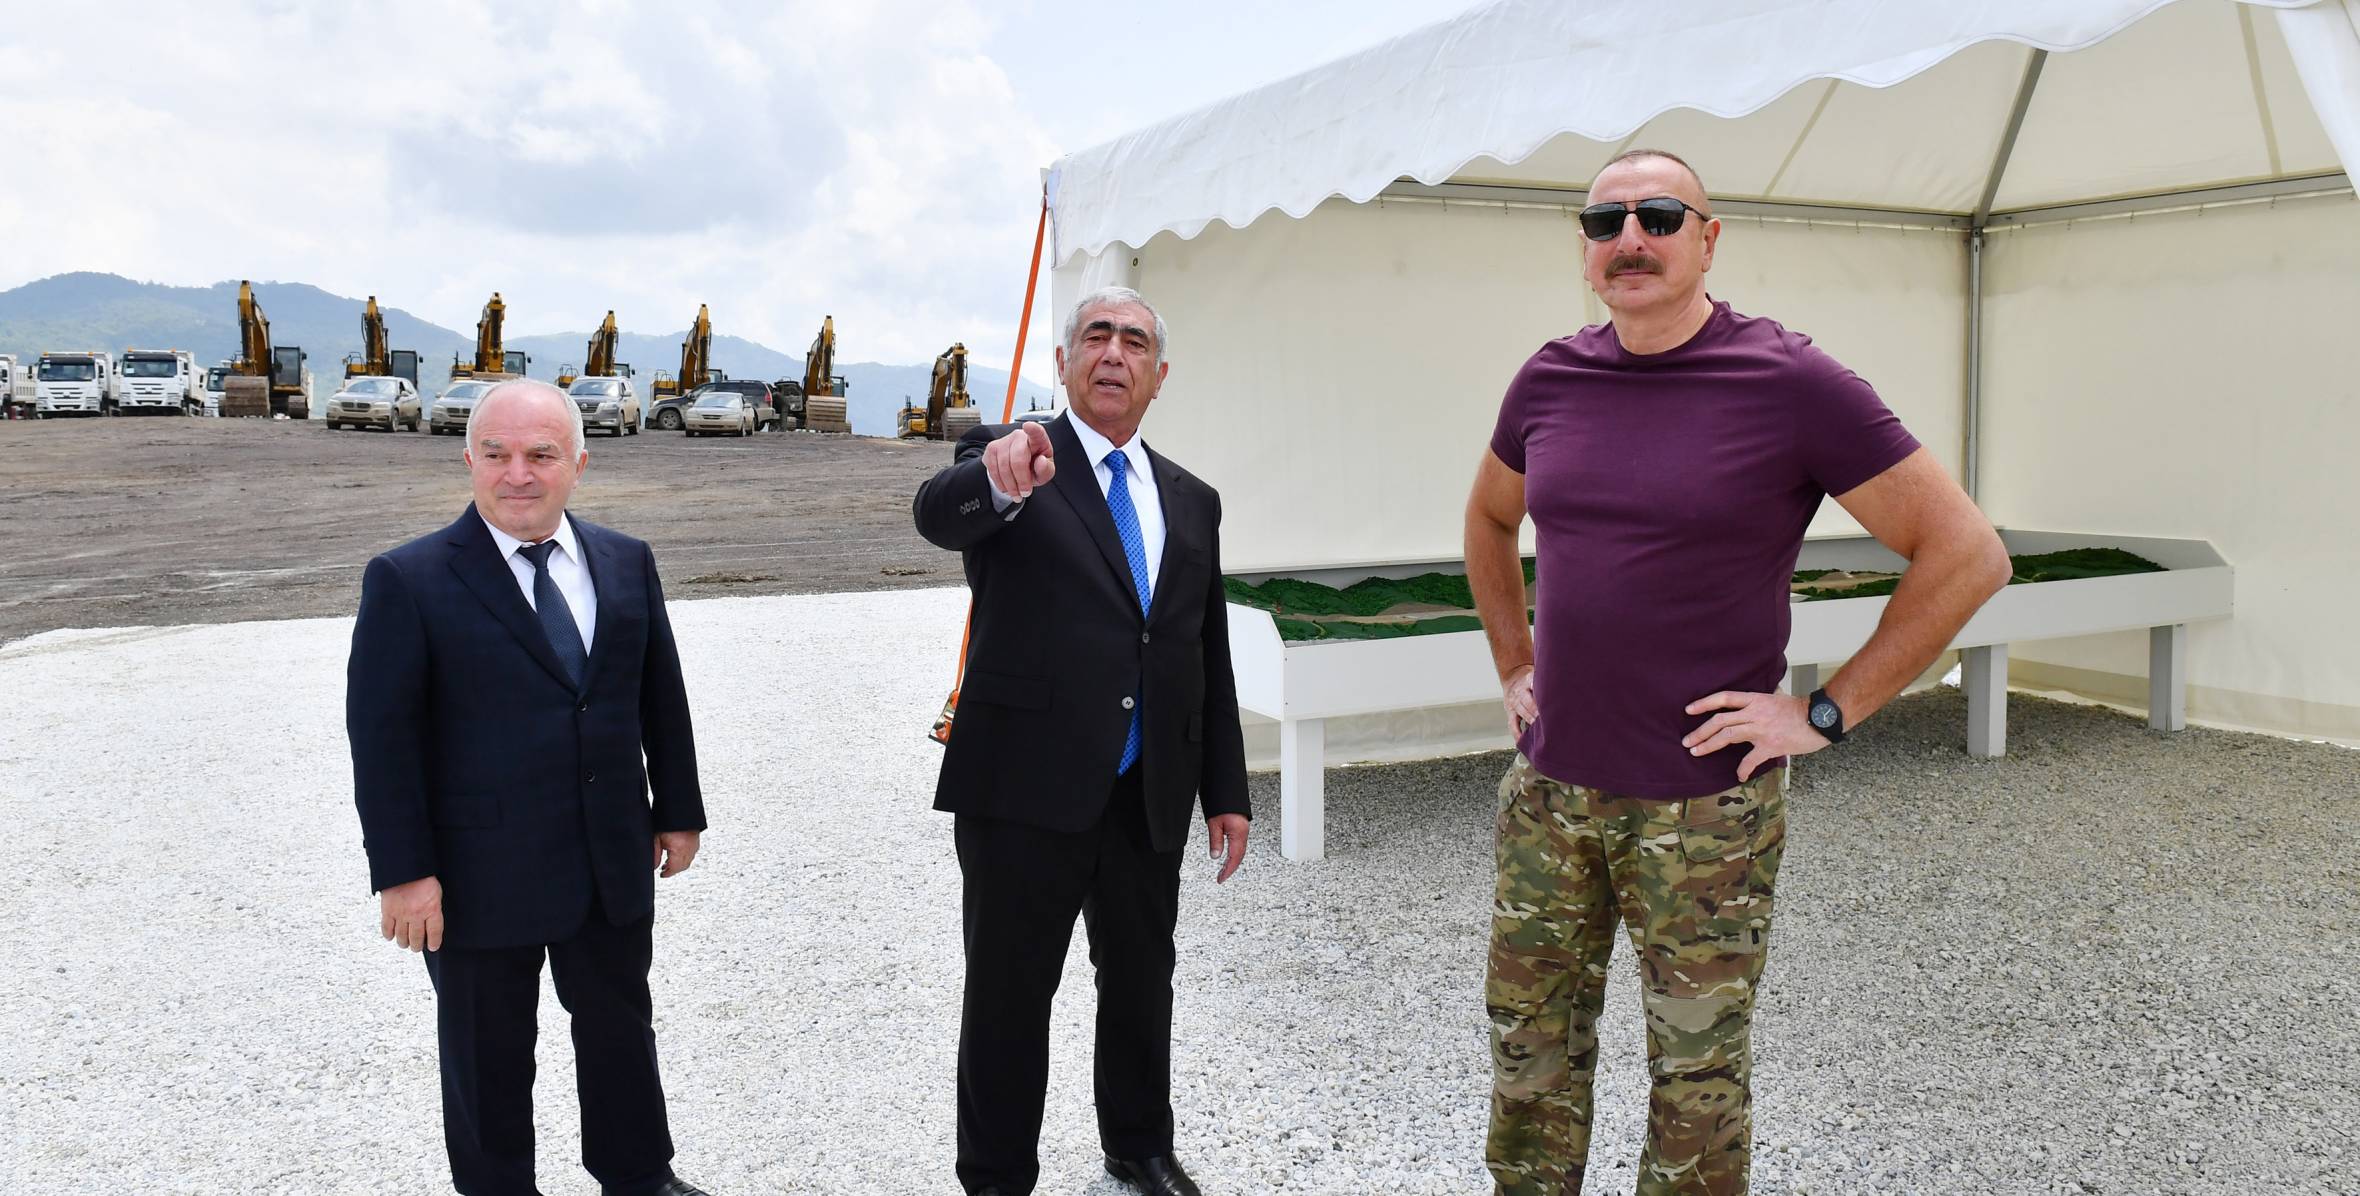 Ilham Aliyev viewed construction work underway at Lachin International Airport